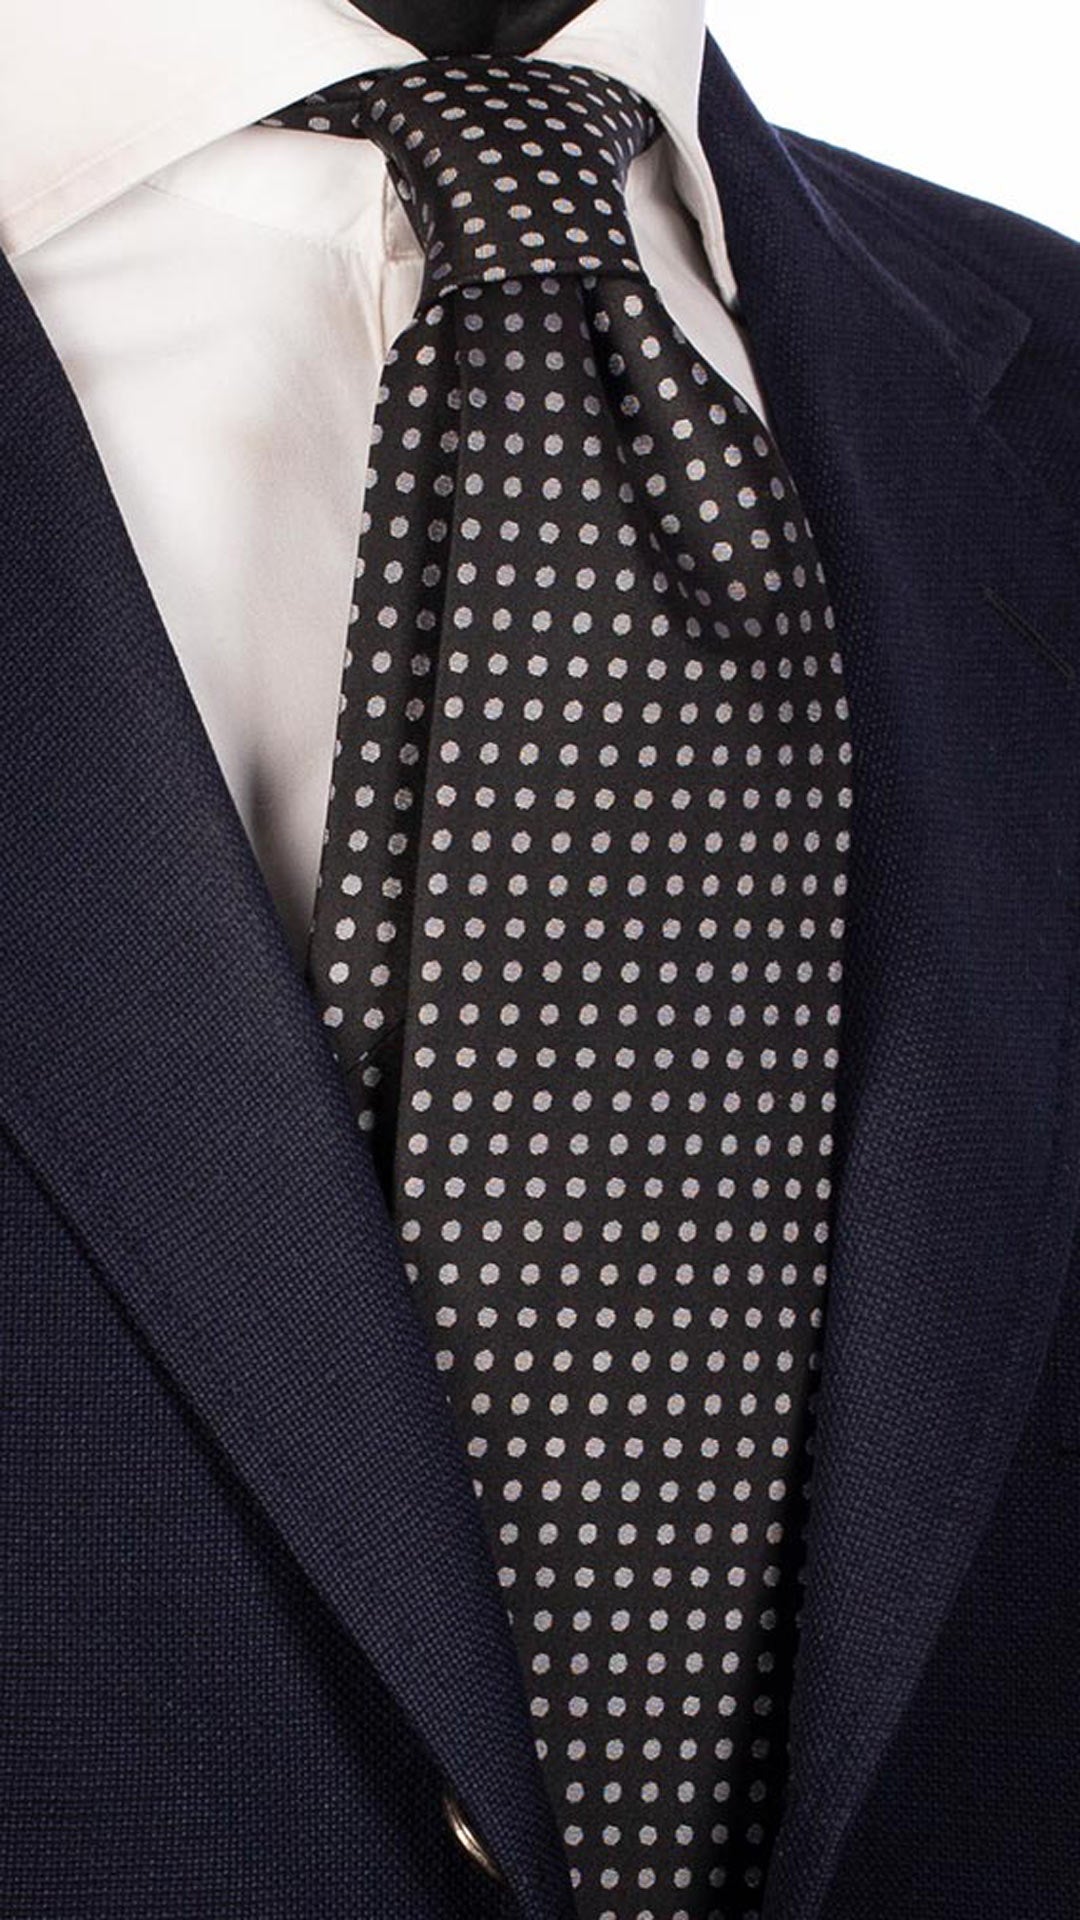 Cravatta da Cerimonia di Seta Nera a Pois Grigio CY2567 Made in Italy Graffeo Cravatte